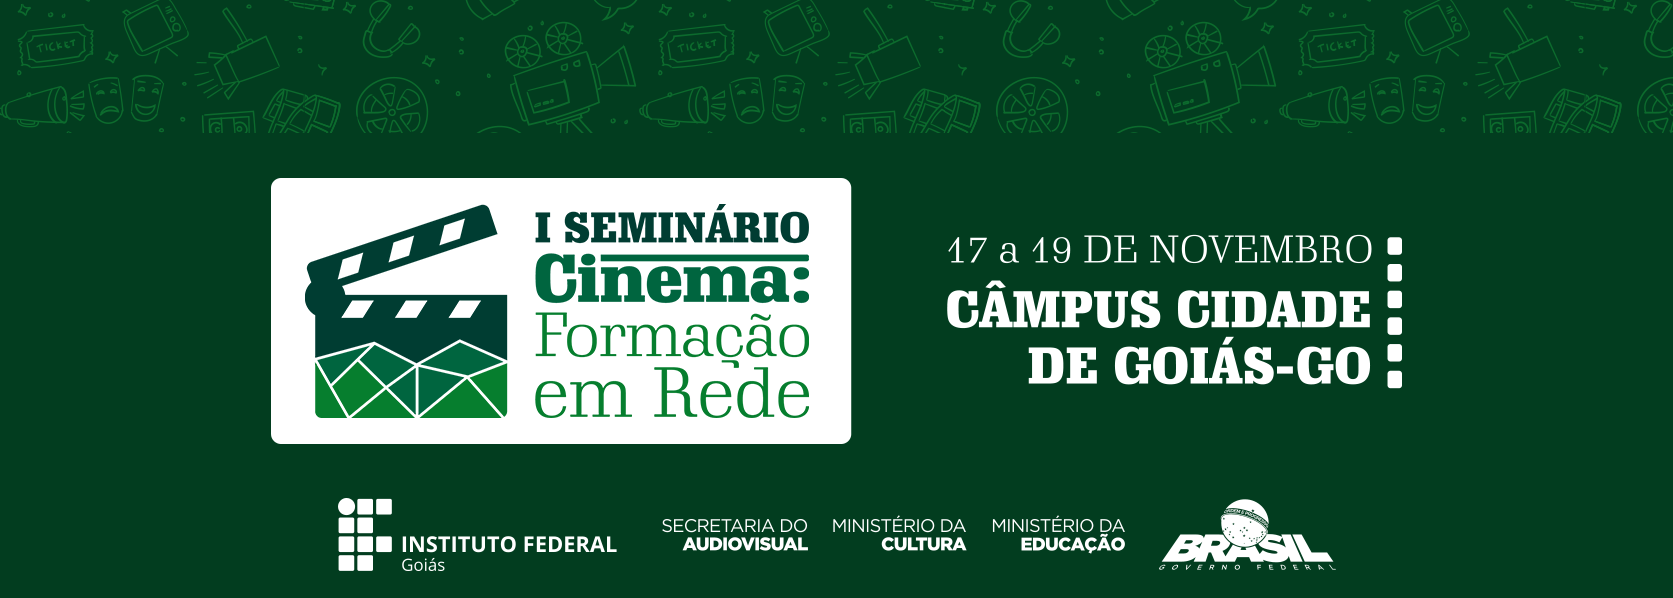 I Seminário "Cinema: Formação em Rede" – Câmpus Cidade de Goiás